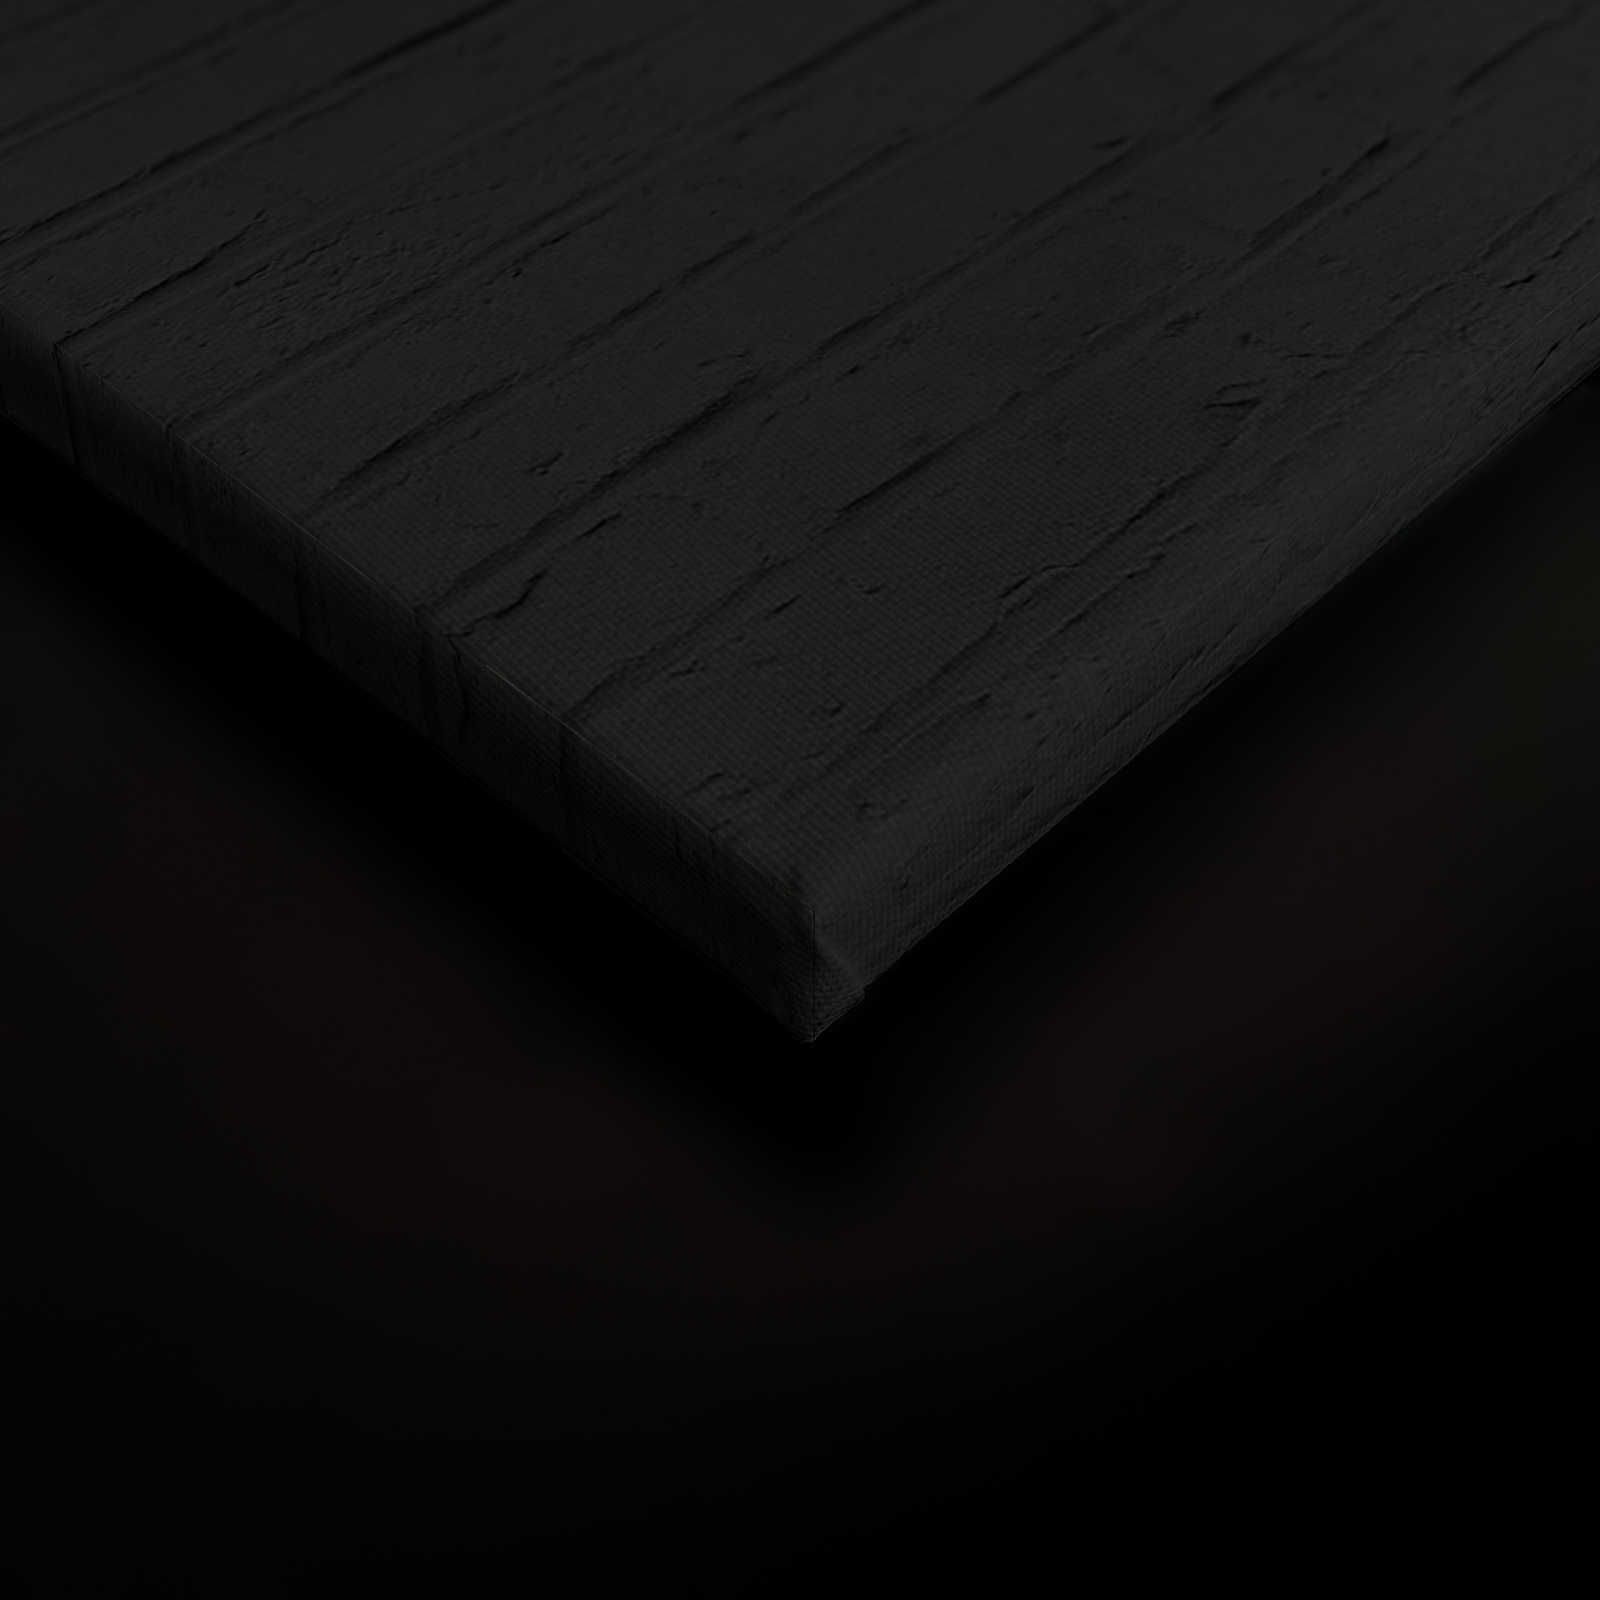             Quadro su tela nera Donna con cocktail e muratura - 0,90 m x 0,60 m
        